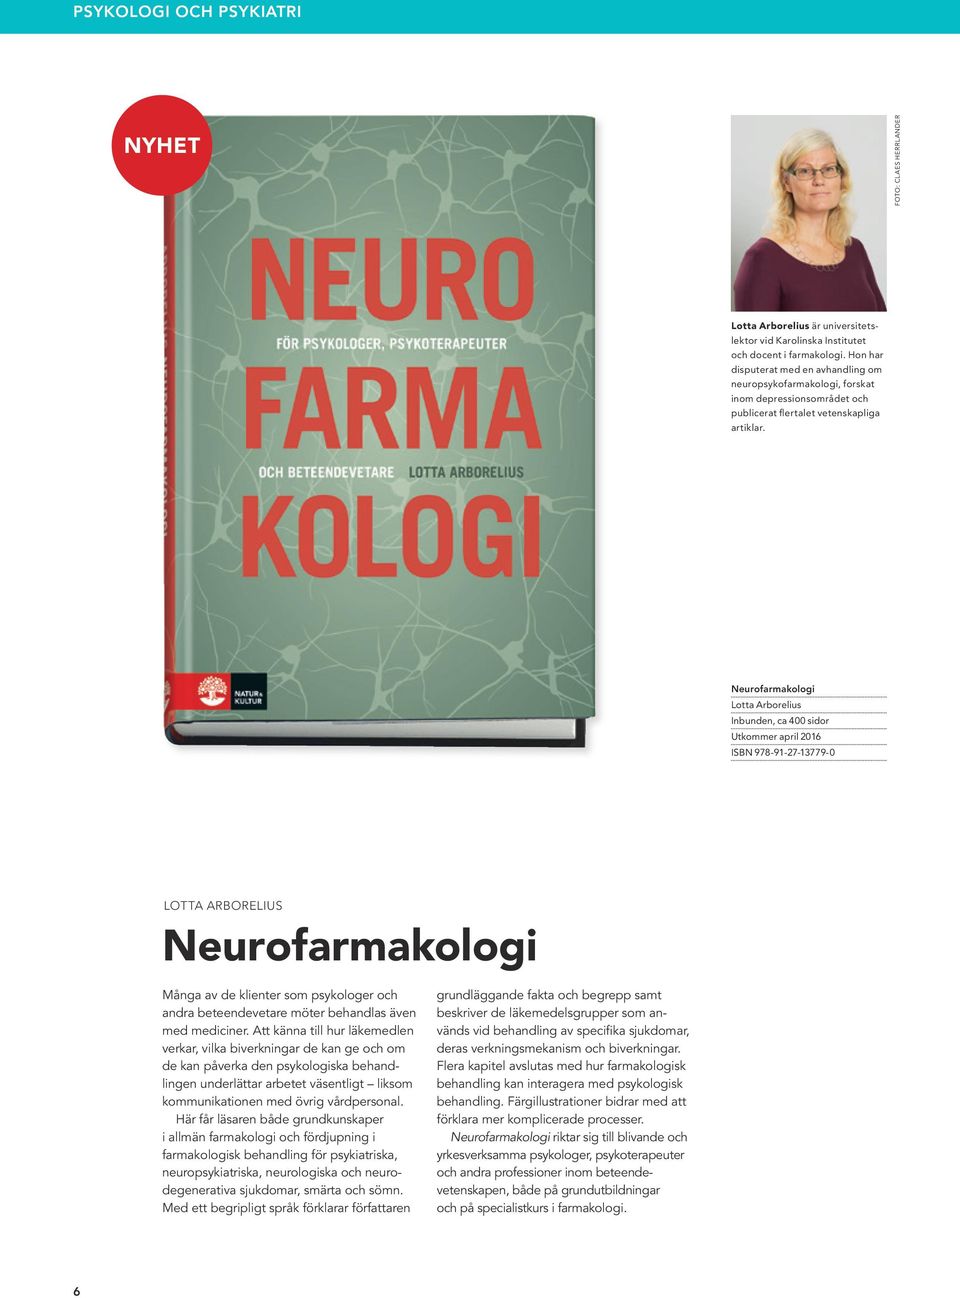 Neurofarmakologi Lotta Arborelius Inbunden, ca 400 sidor Utkommer april 2016 ISBN 978-91-27-13779-0 LOTTA ARBORELIUS Neurofarmakologi Många av de klienter som psykologer och andra beteendevetare